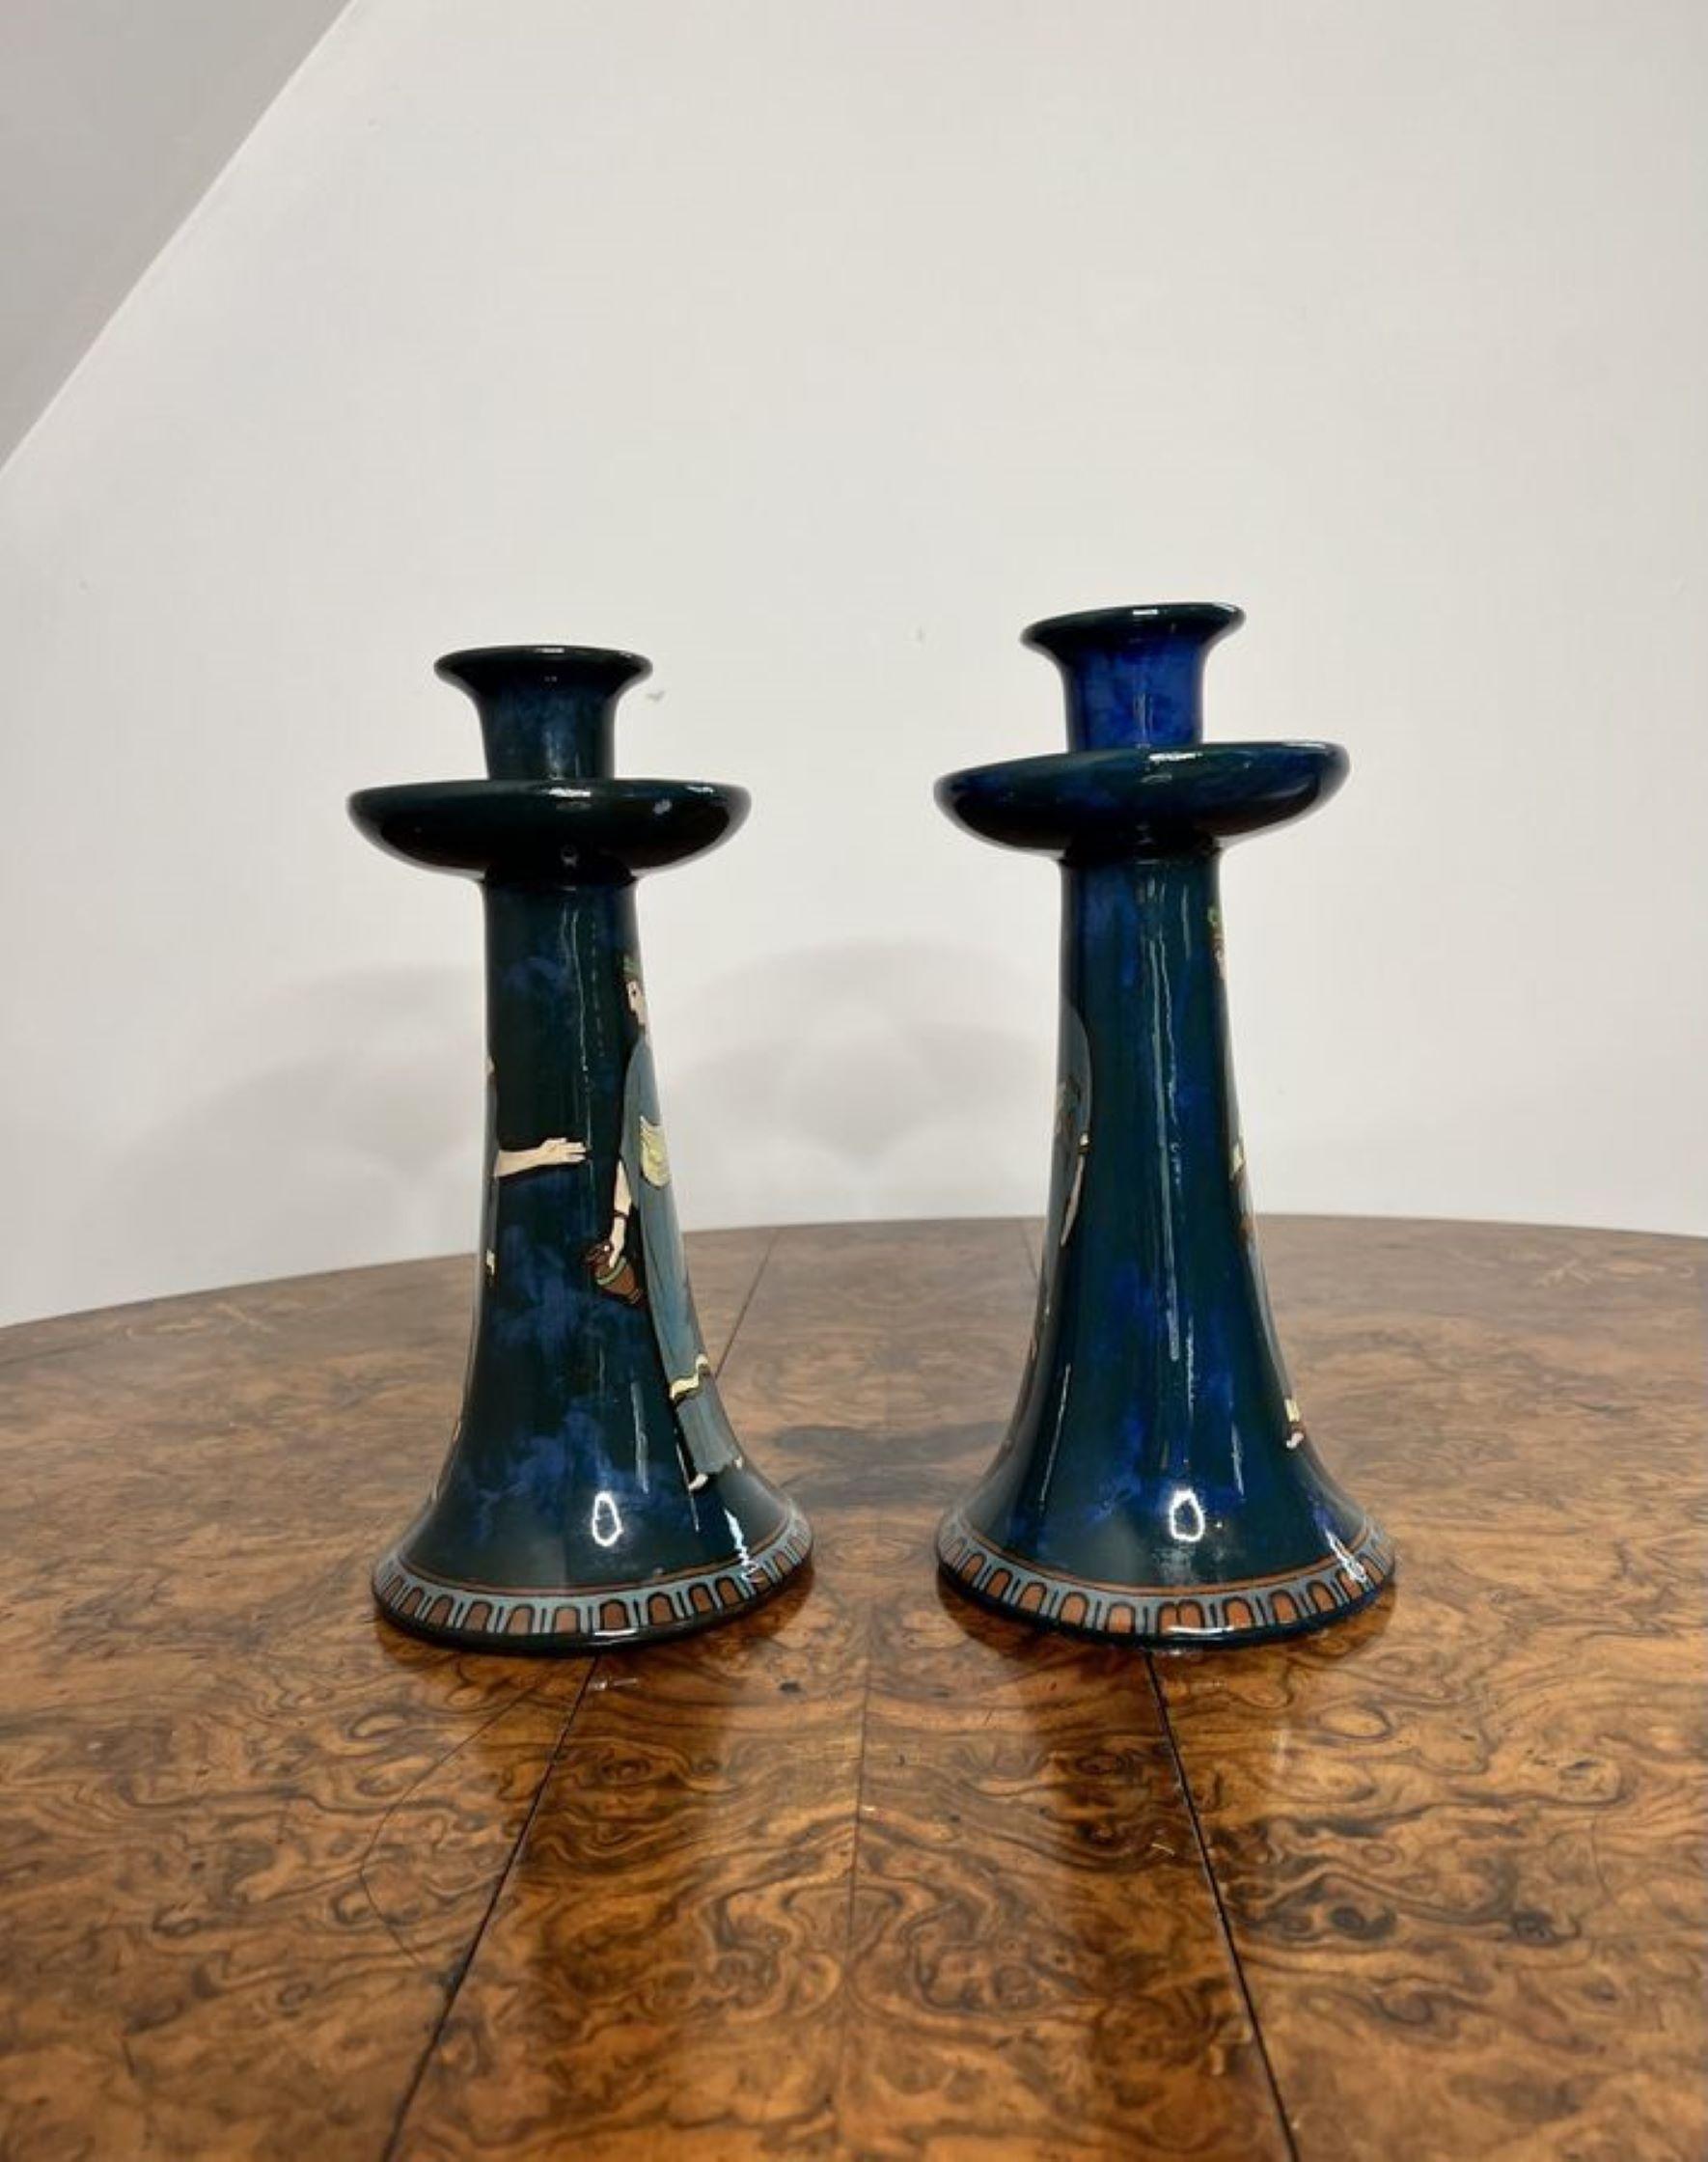 Wunderschönes Paar antiker Decoro England-Kerzenhalter mit einem wunderschönen Paar geformter Kerzenhalter mit blauem Grund, handbemalt mit figuralen Szenen in blauen, grünen, gelben und braunen Farben, die auf kreisförmig gemusterten Sockeln